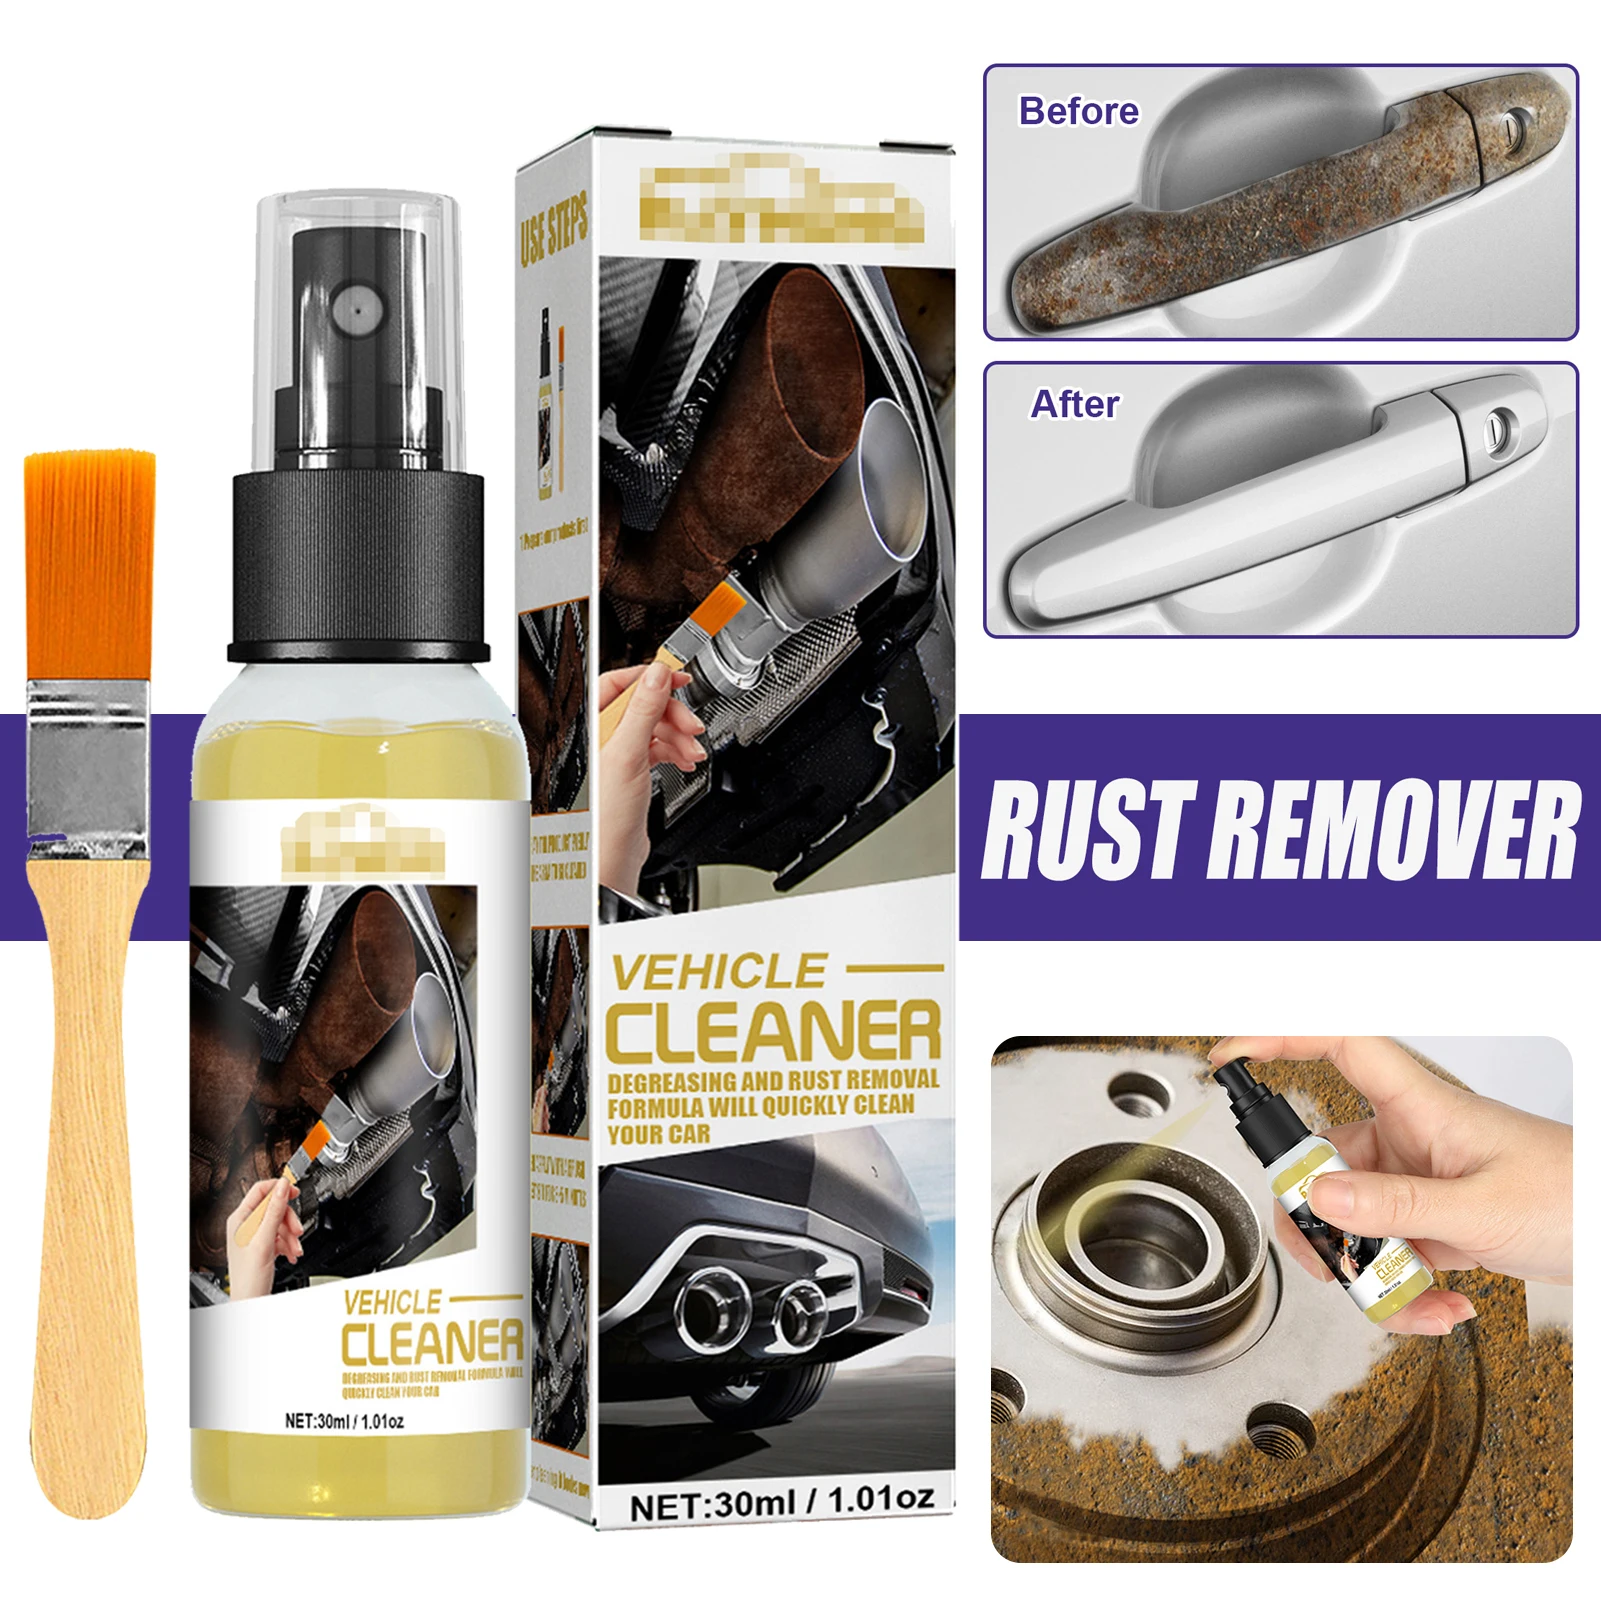 Rust cleaner spray как пользоваться фото 16